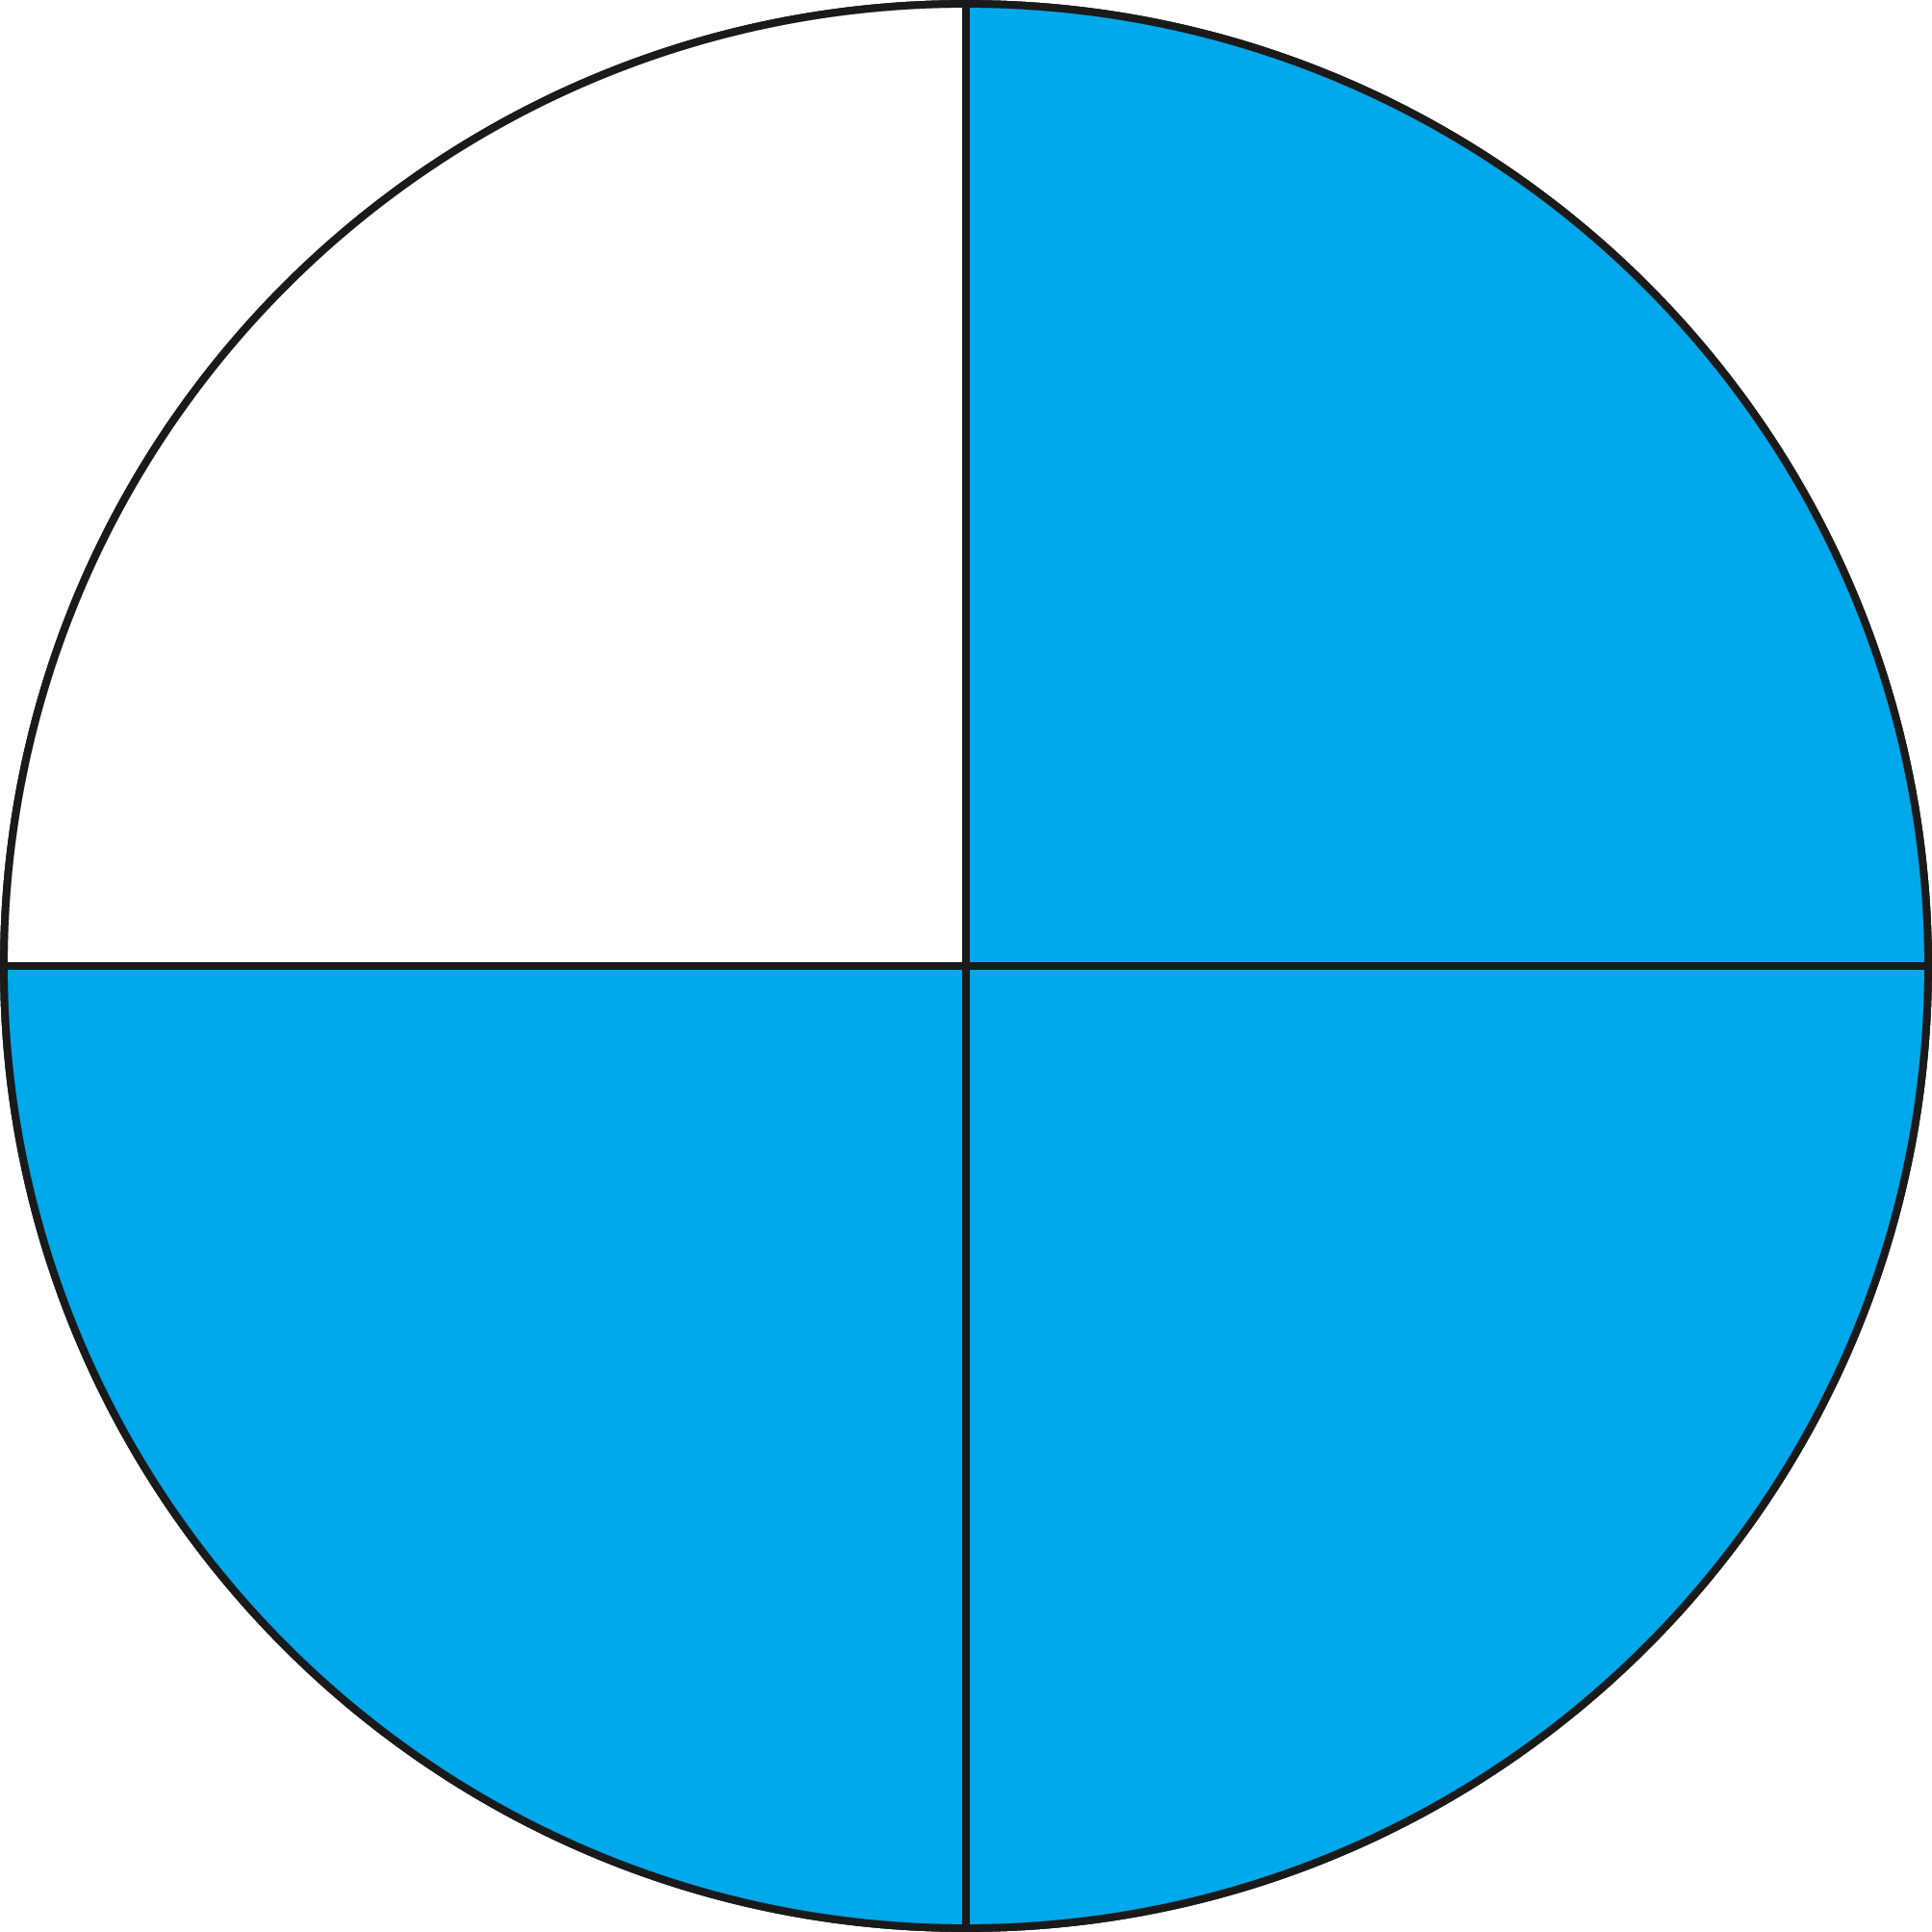 Делится на четыре части. Rhgeu gjltktysq YF 4 xfcnb. Круг поделенный на 4 части. Круг разделенный на части. Круг разделенный на две части.